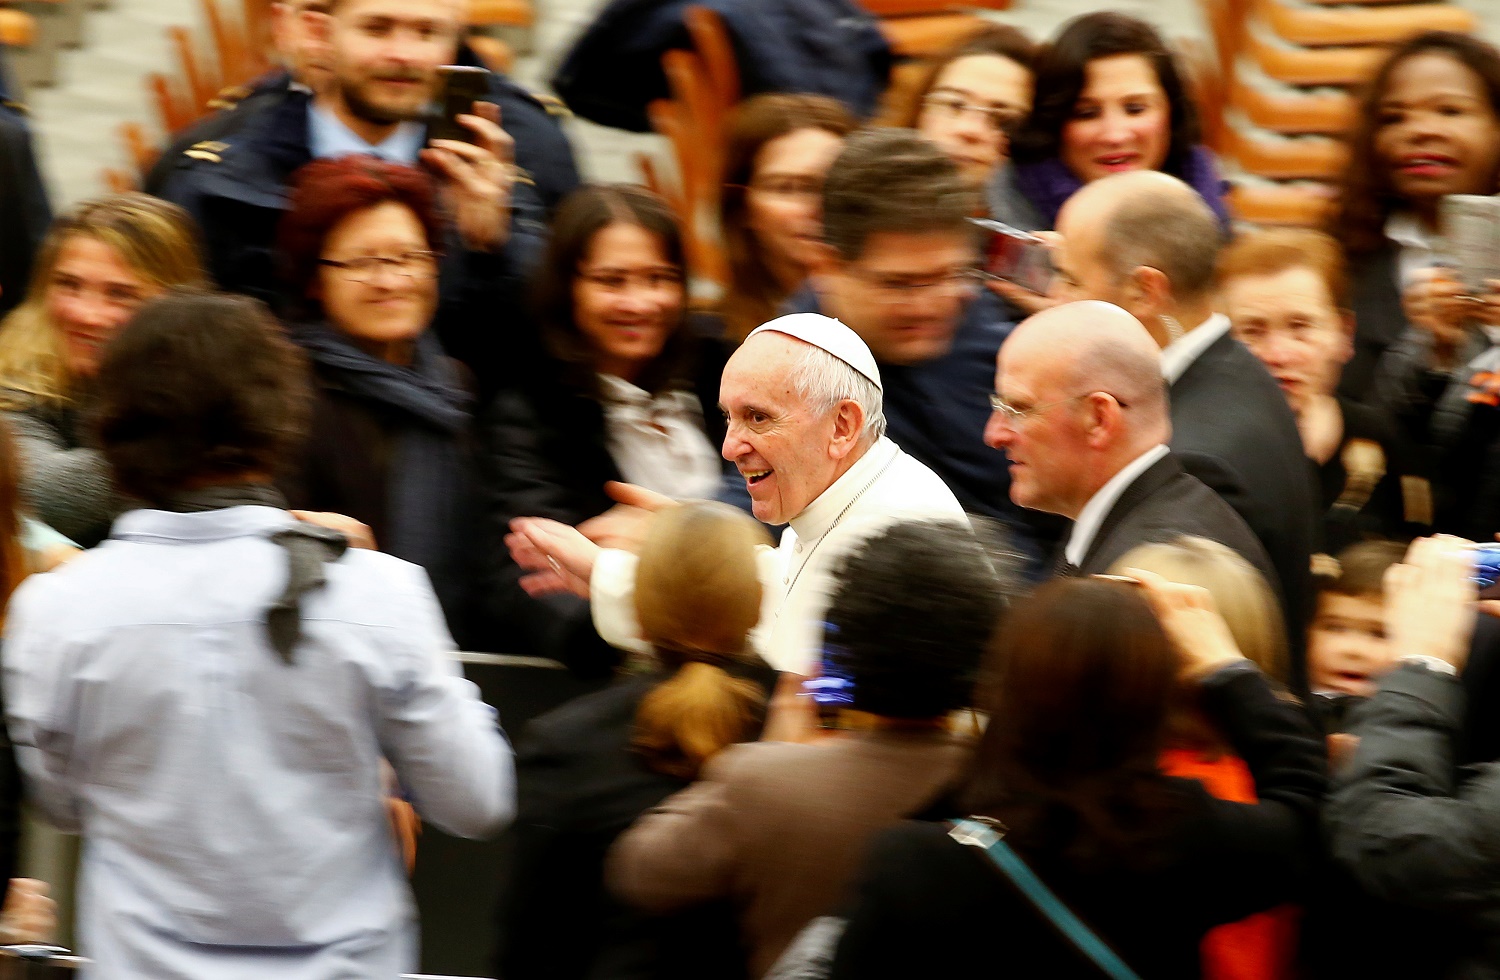 El Papa quiere dar puestos clave en la Curia a mujeres y laicos